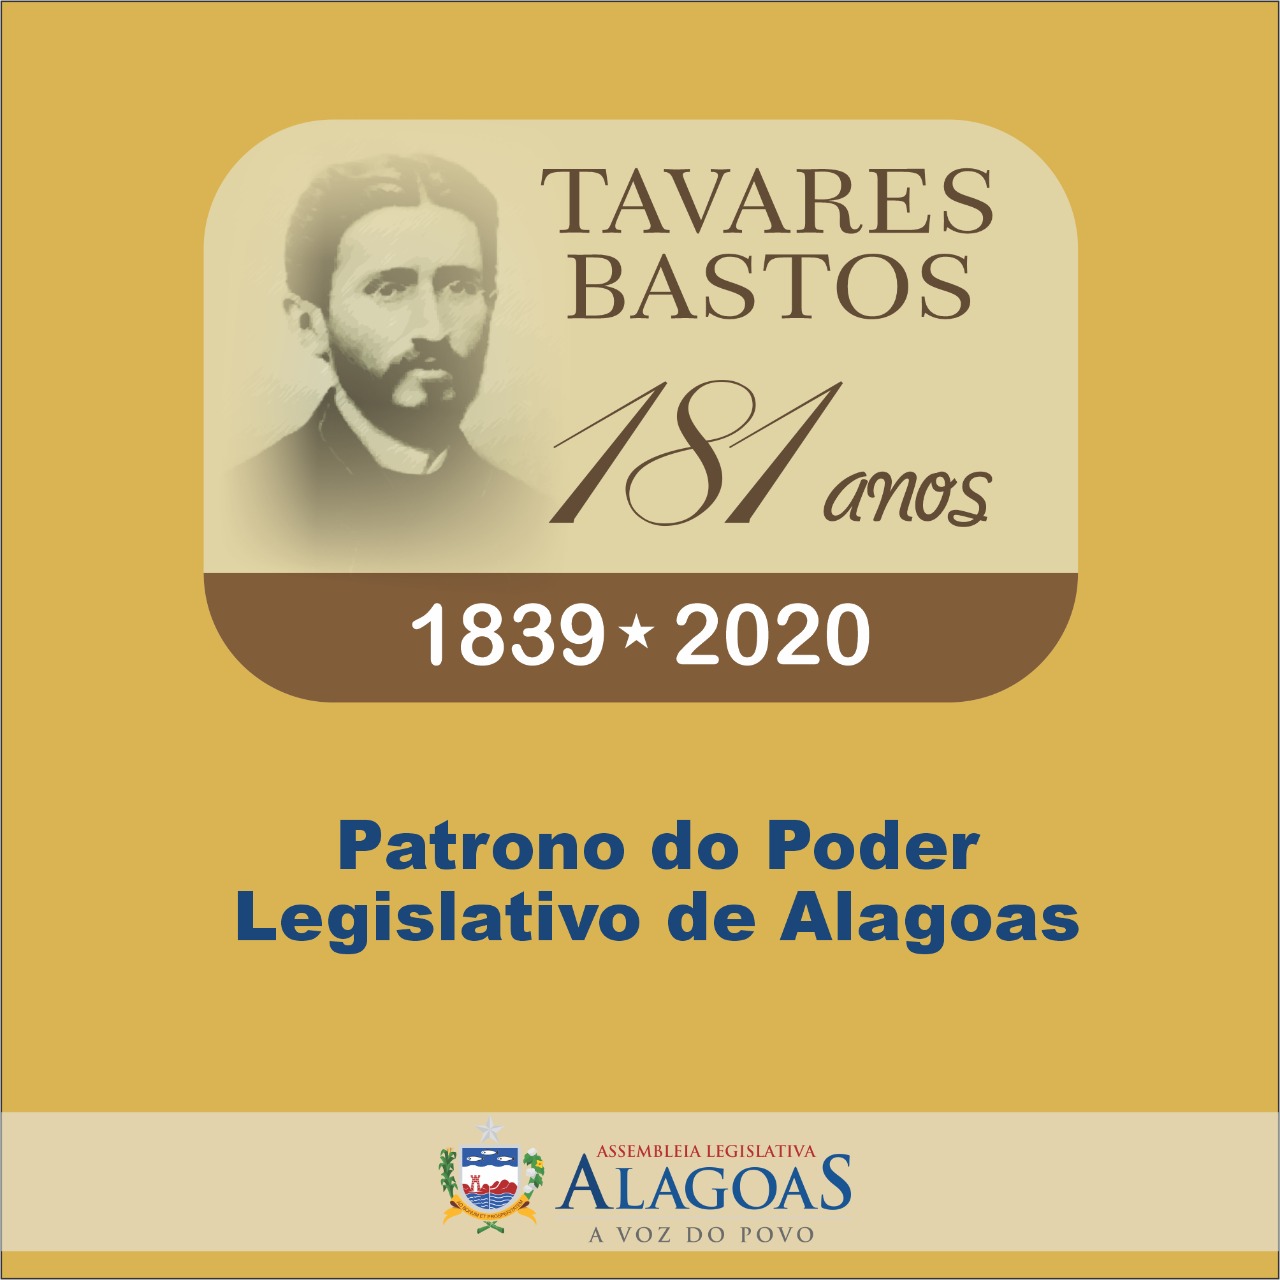 Assembleia comemora os 181 anos de Tavares Bastos